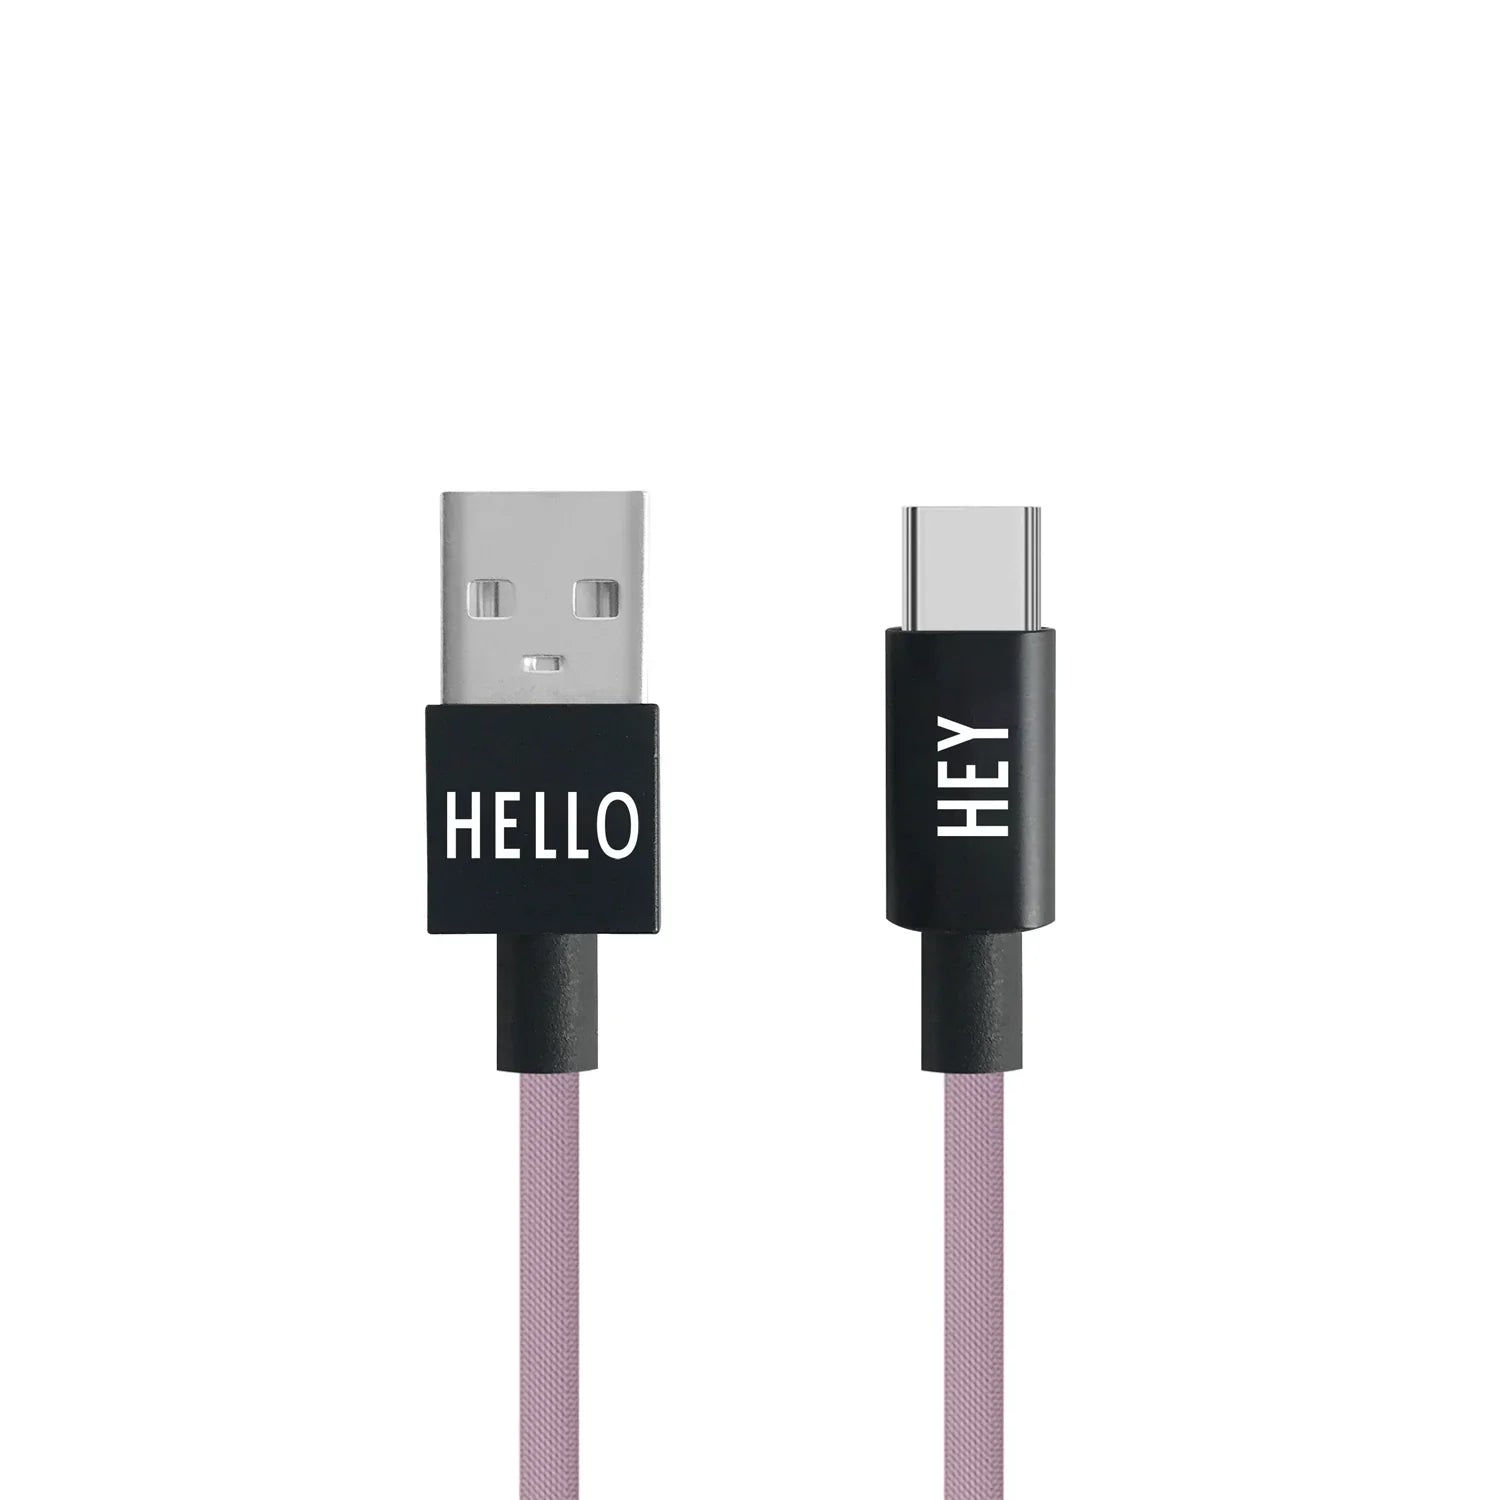 Designbuchstaben mein Kabel USB C -Kabel 1M, Lavendel